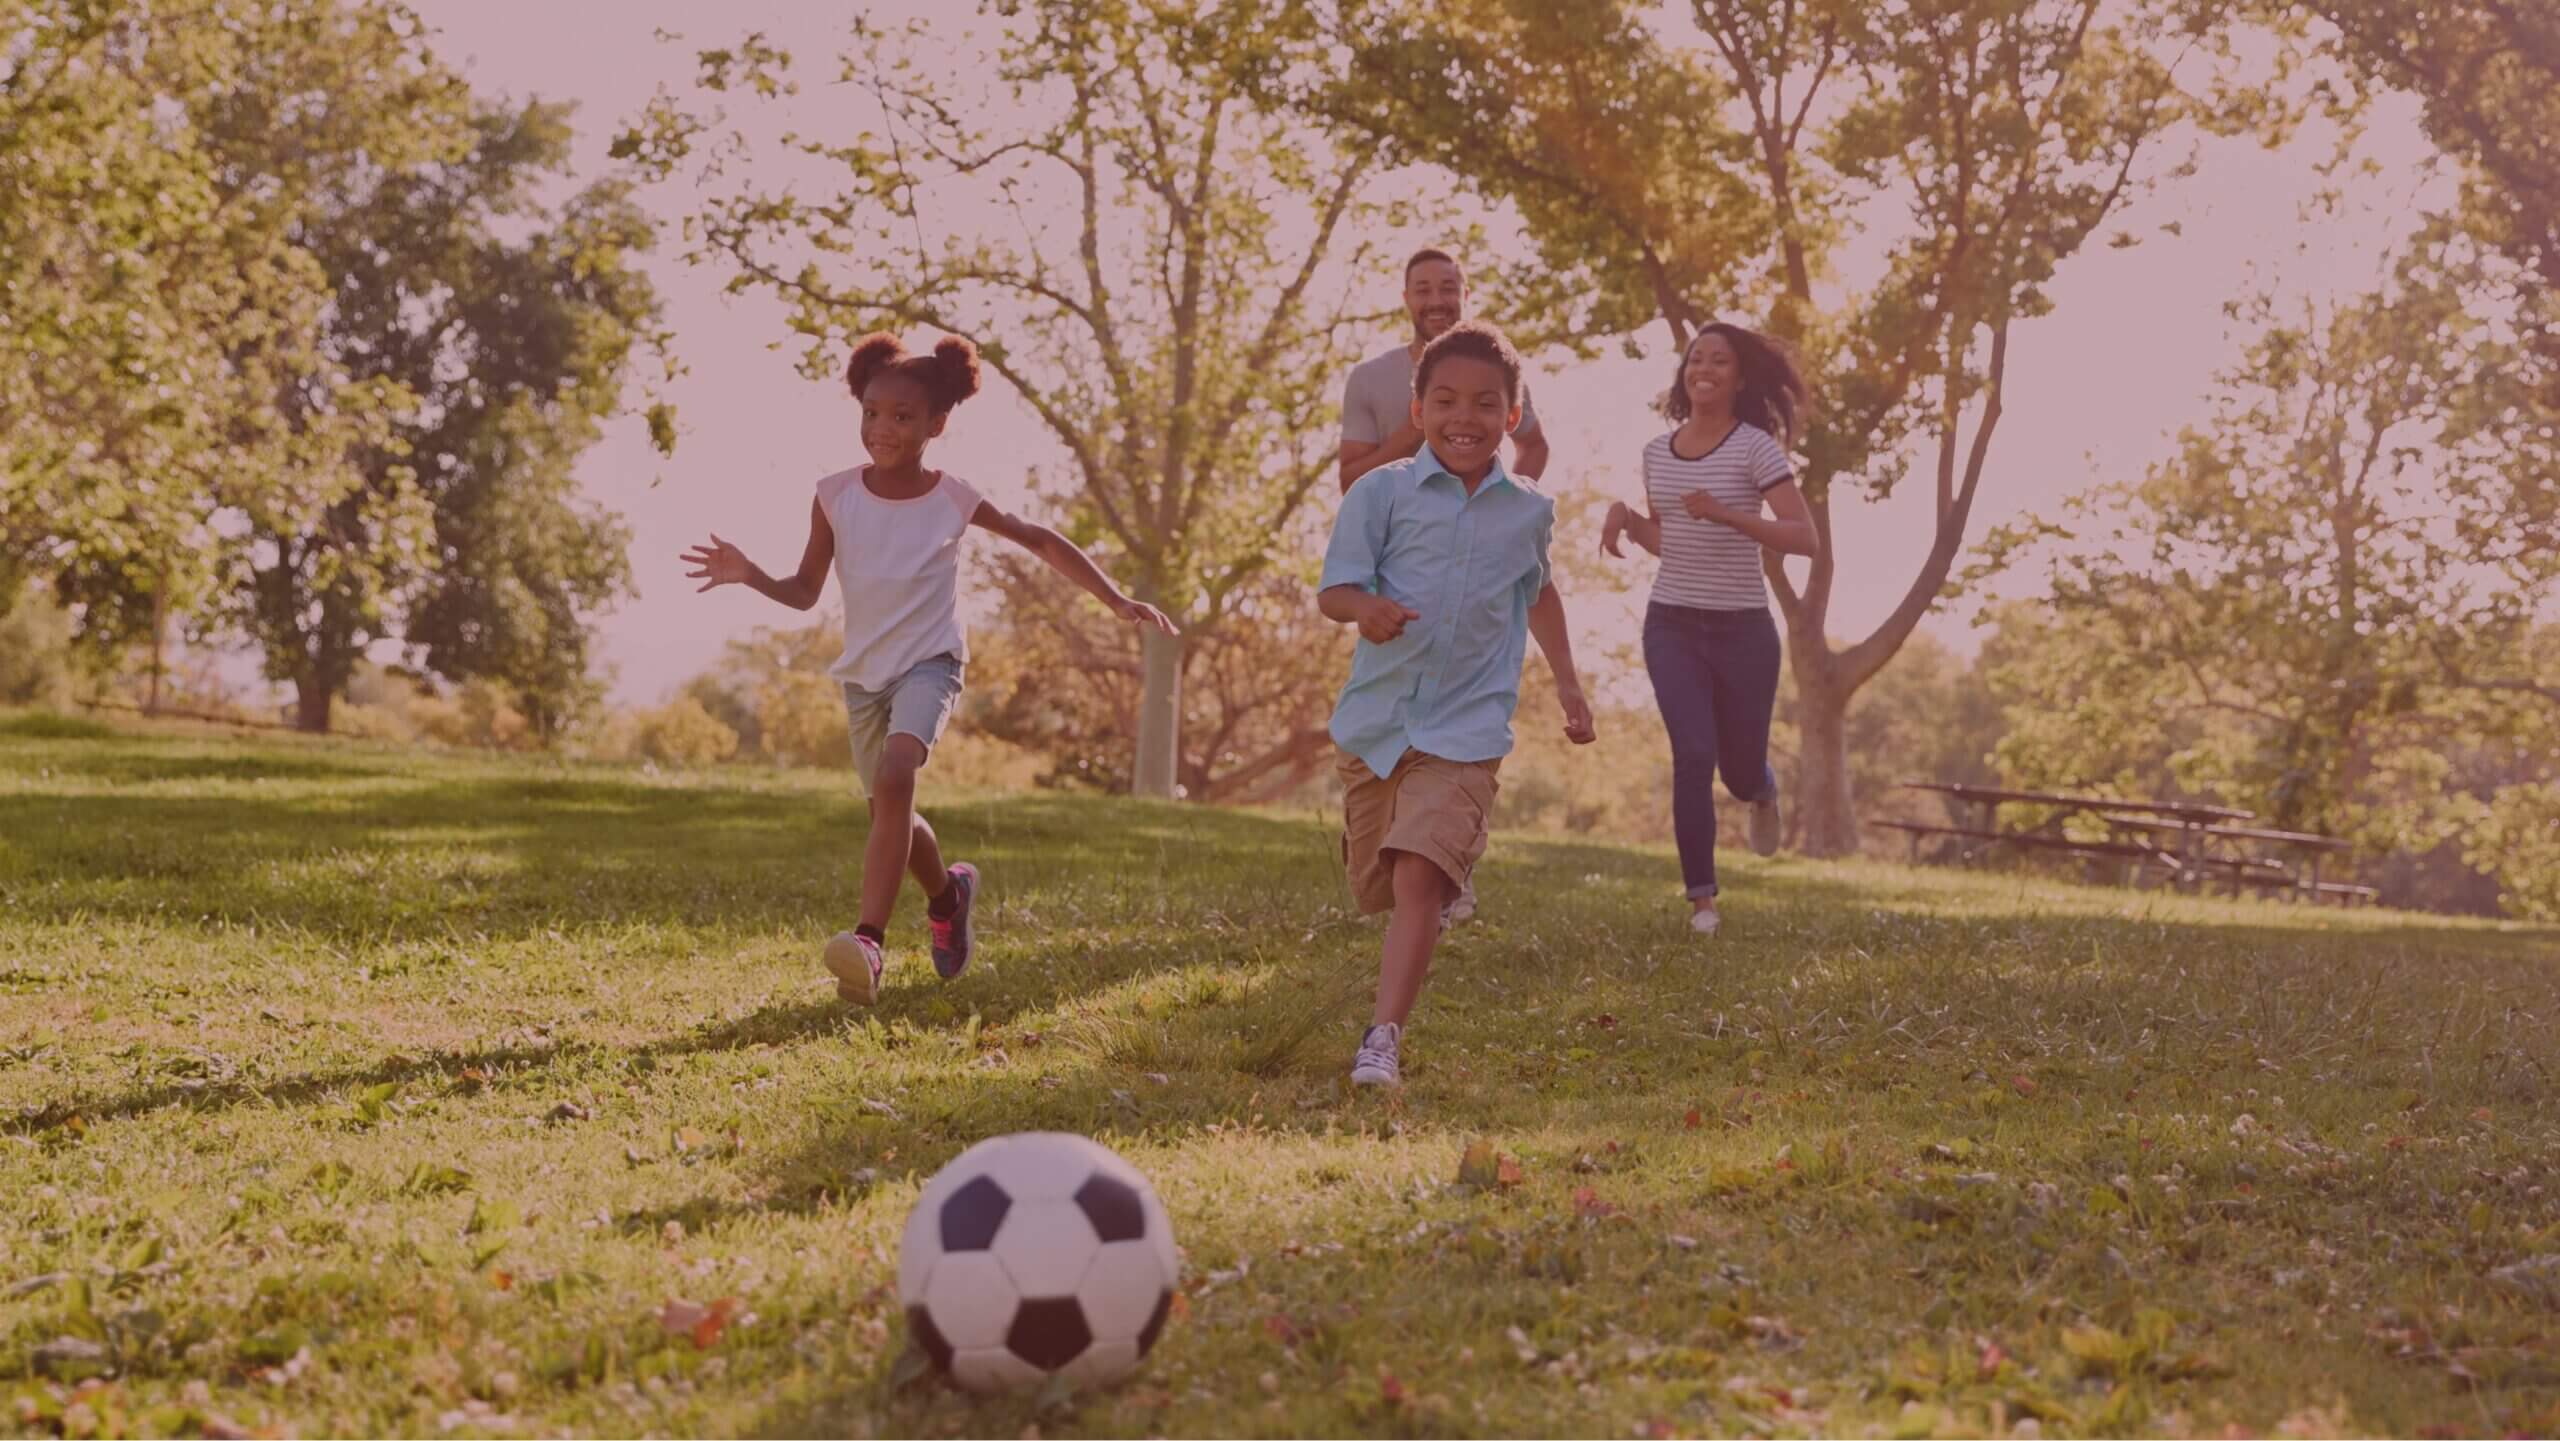 ribeirao-preto-e-o-lugar-ideal-para-o-seu-lar-familia-jogando-bola-no-parque